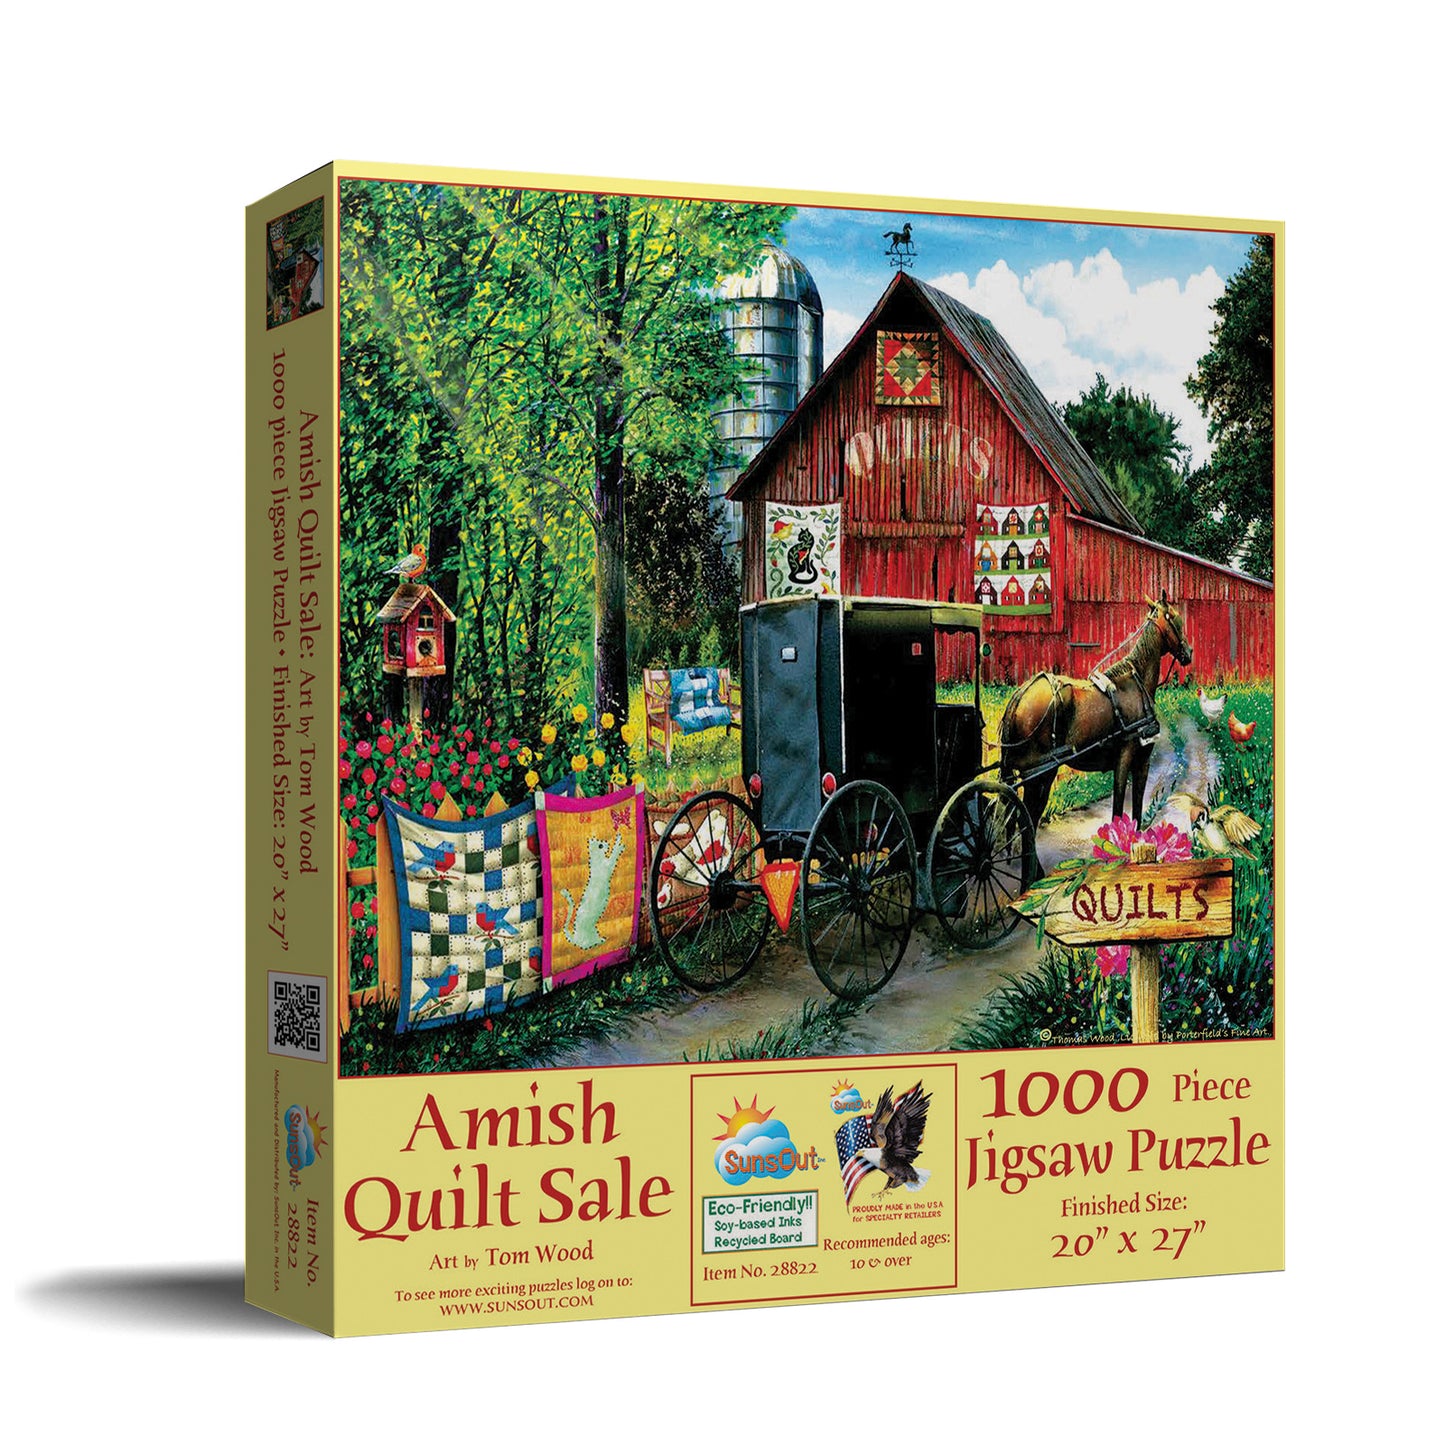 Amish Quilt Sale - 1000 Piece Jigsaw Puzzle